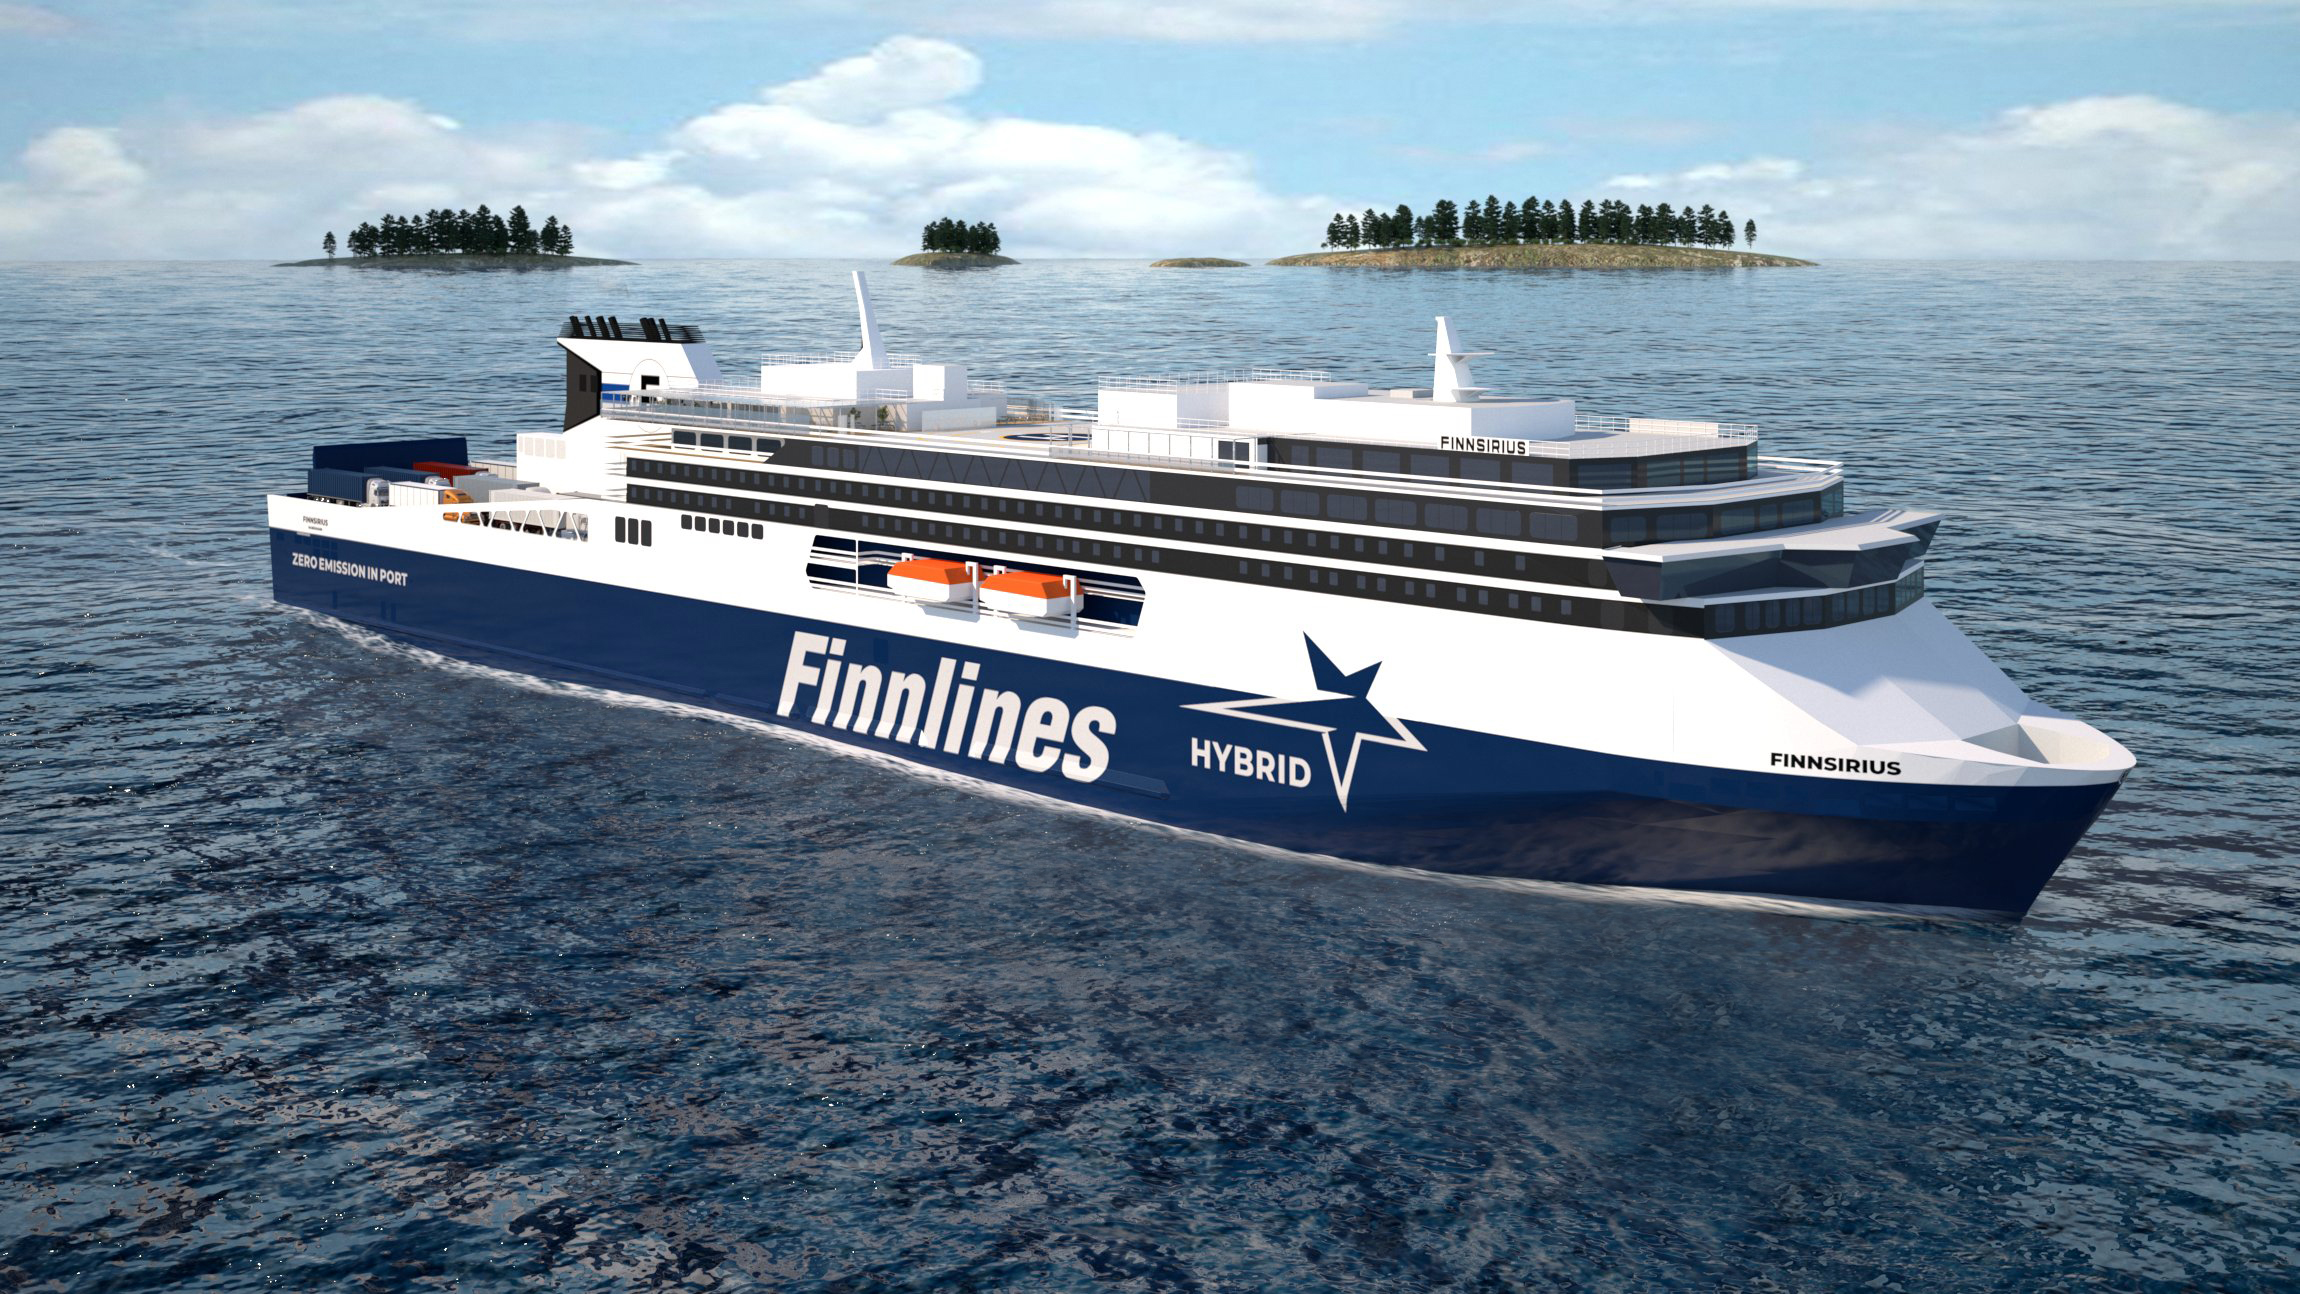 Finnlinesin ensimmäisen Superstar ropax-aluksen kölinlaskua juhlistettiin eilen